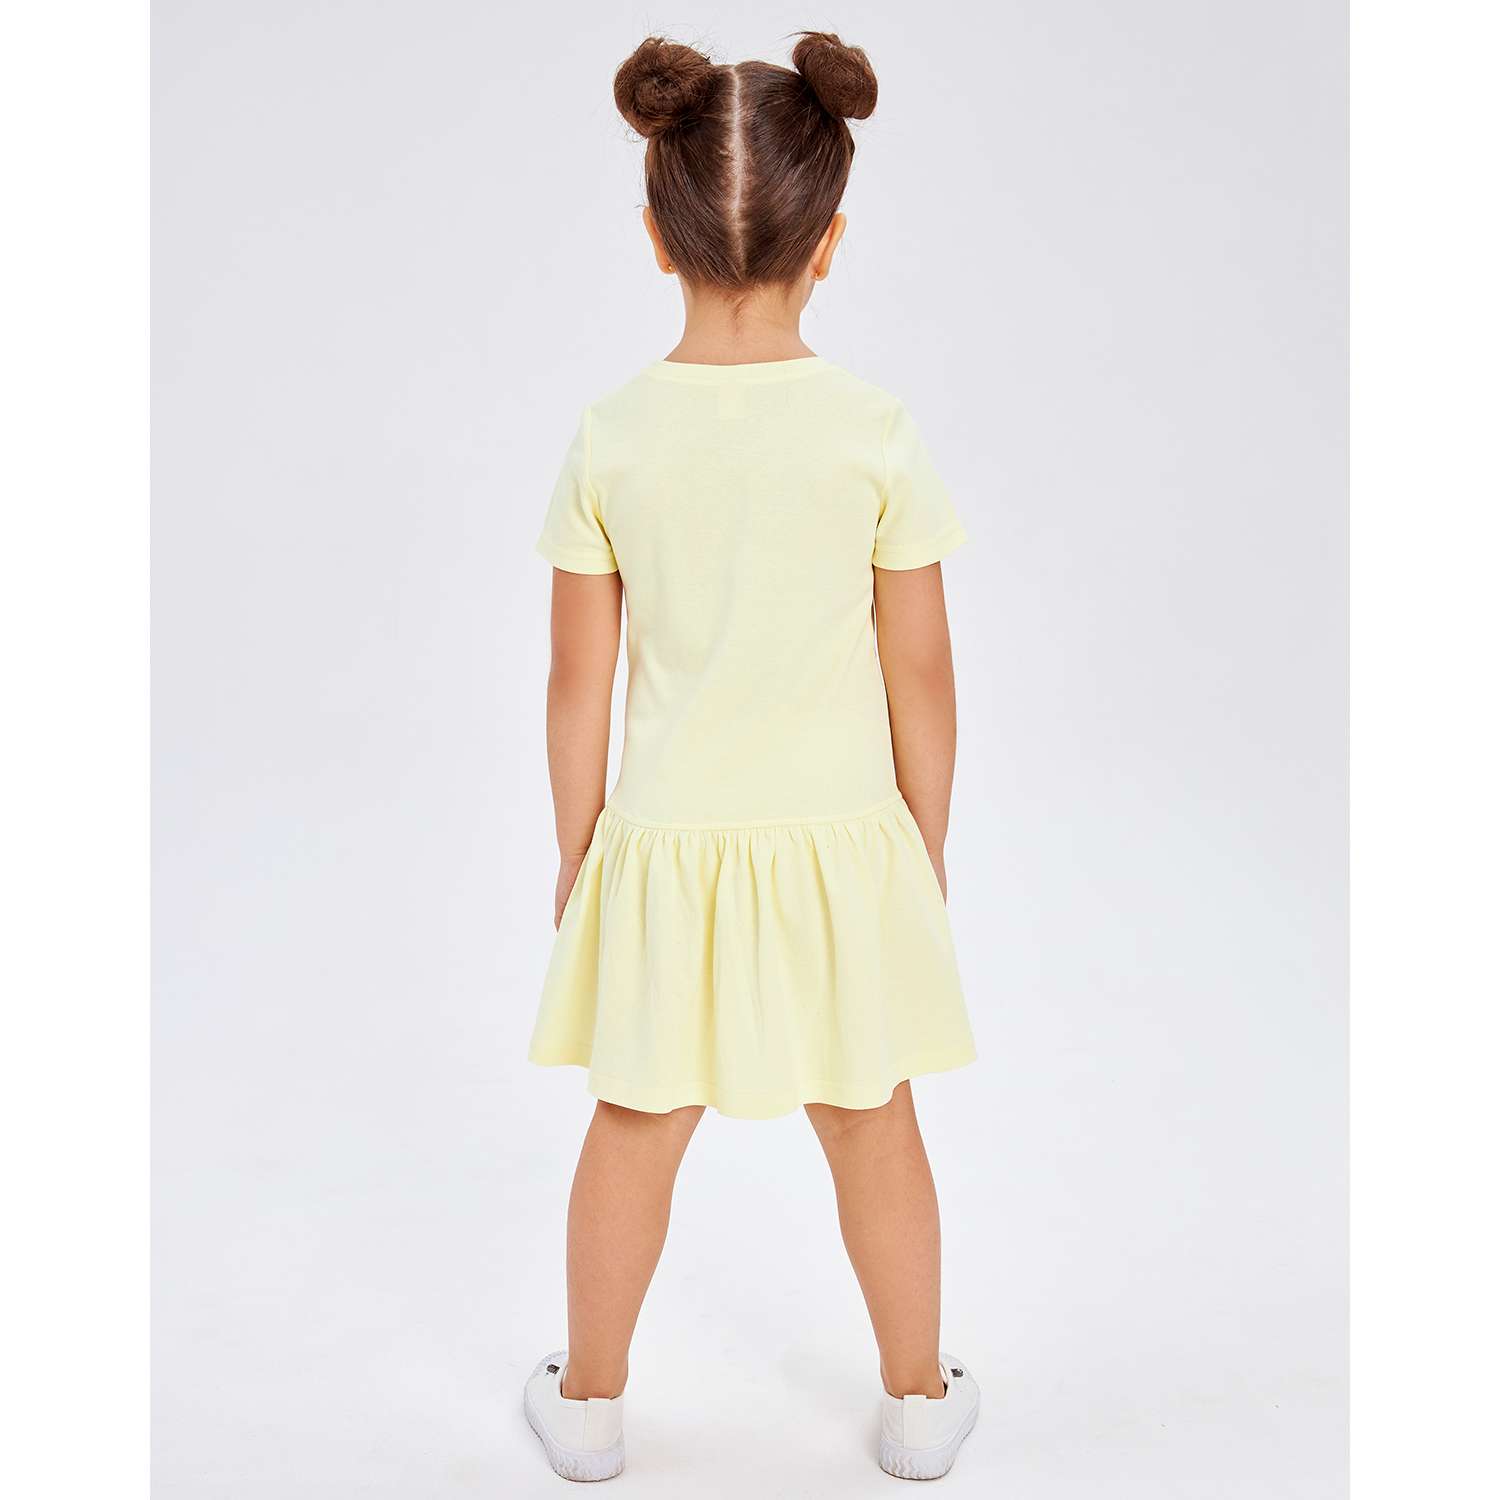 Платье Lucky Child 143-63/светло-желтый/2-12 - фото 2